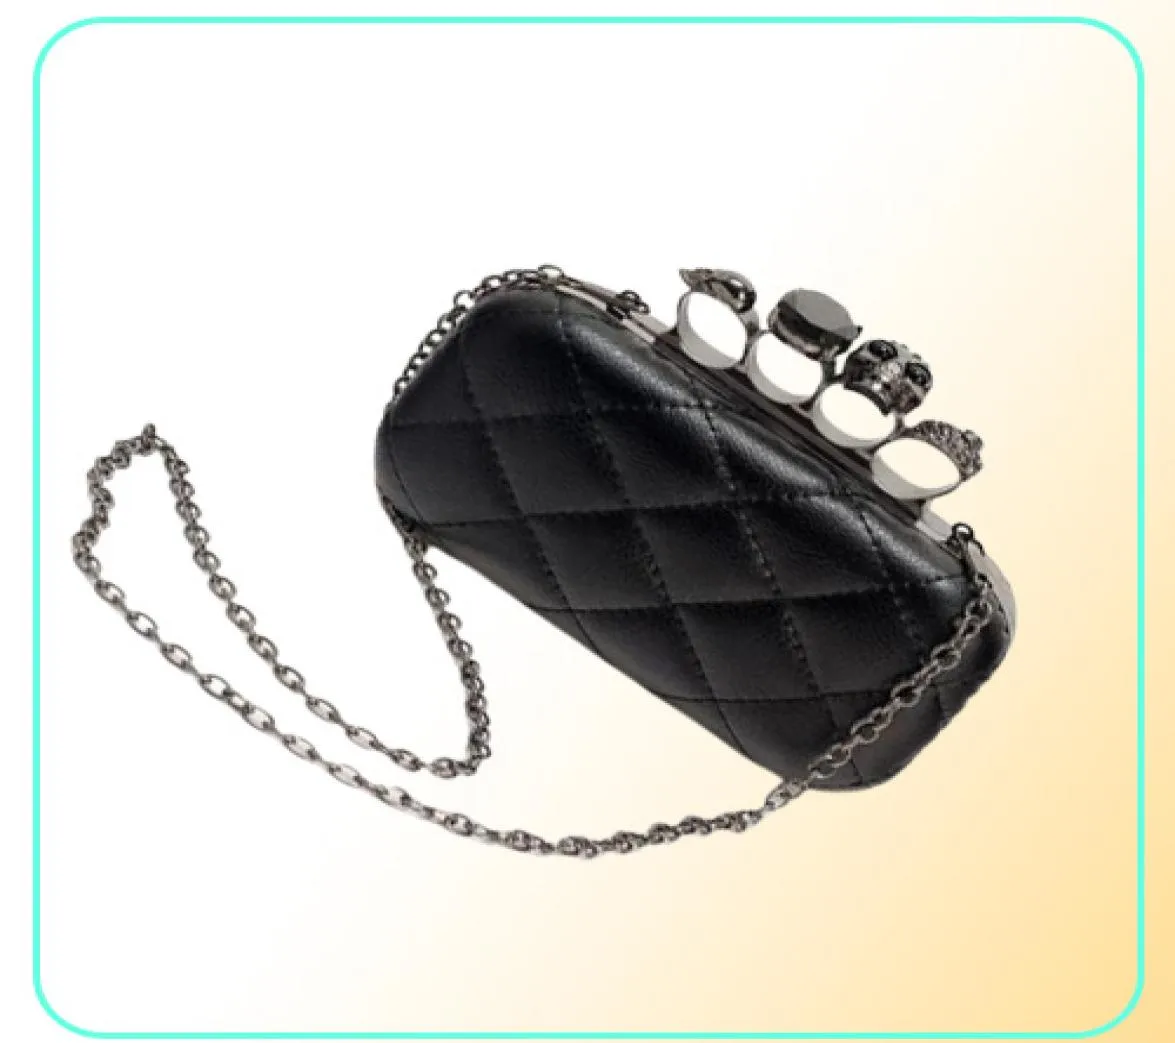 Nuovo nuovo cranio vintage borsetta nera cranio anelli di anelli borsette della borsetta borse da sera la borsa a tracolla inclusa della catena7096864